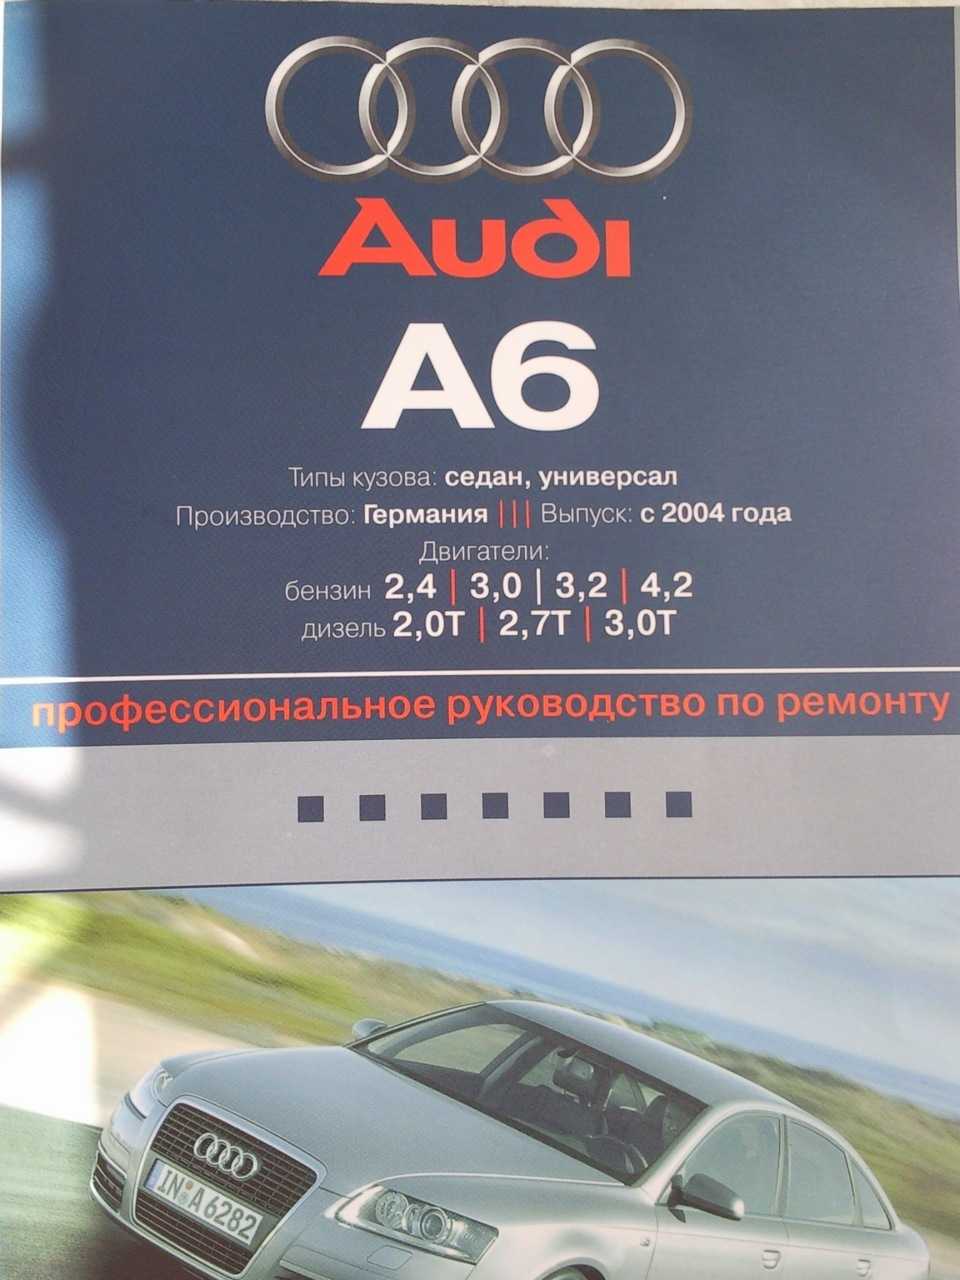 Ауди А6 : Передняя подвеска Audi A6 У нас есть все фото и схемы необходимые для ремонта Полный мануал по ремонту и обслуживанию авто